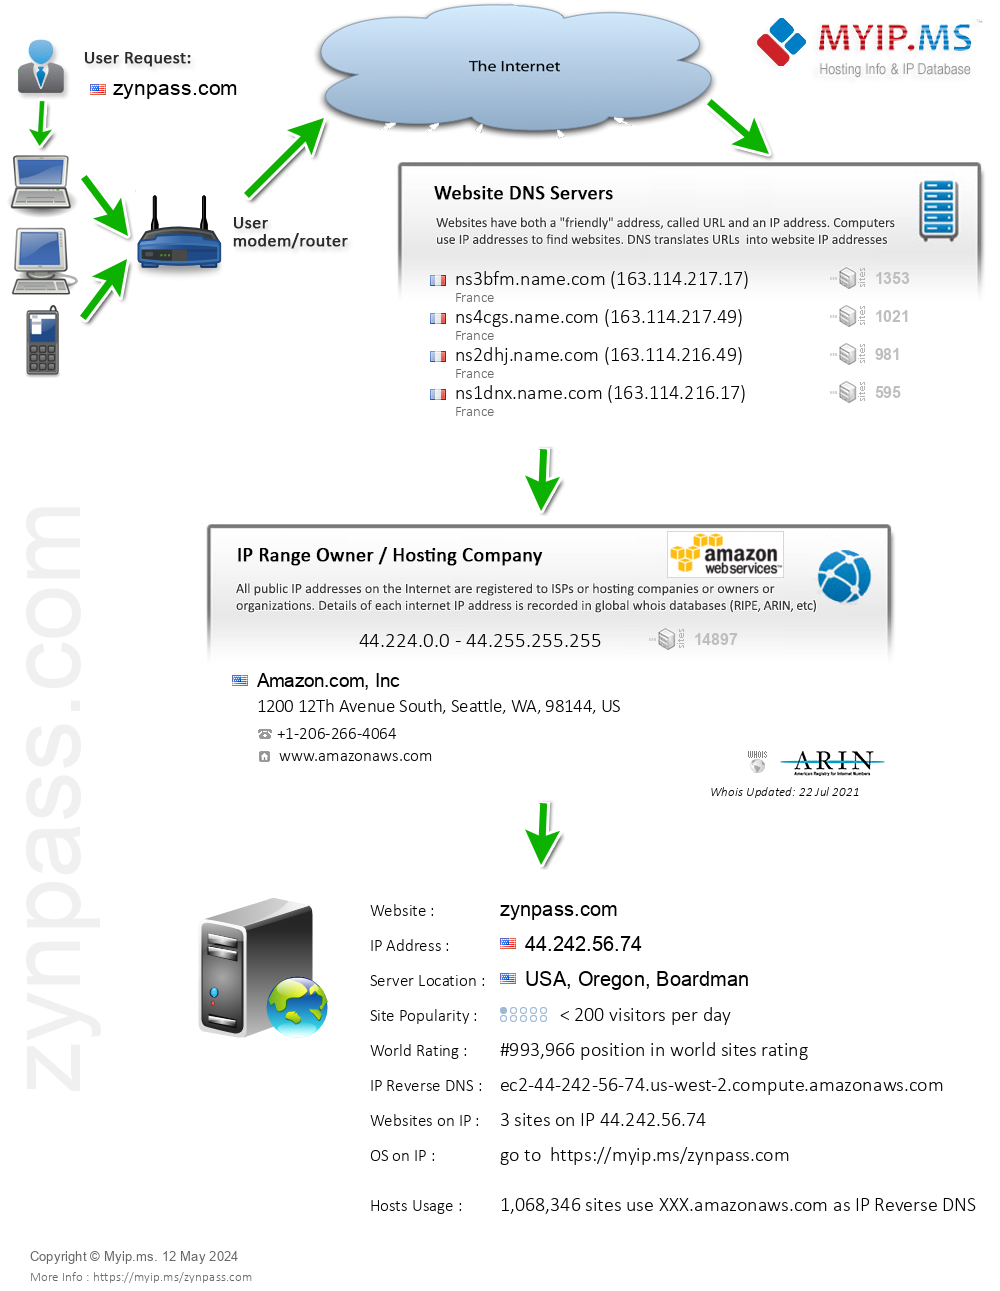 Zynpass.com - Website Hosting Visual IP Diagram